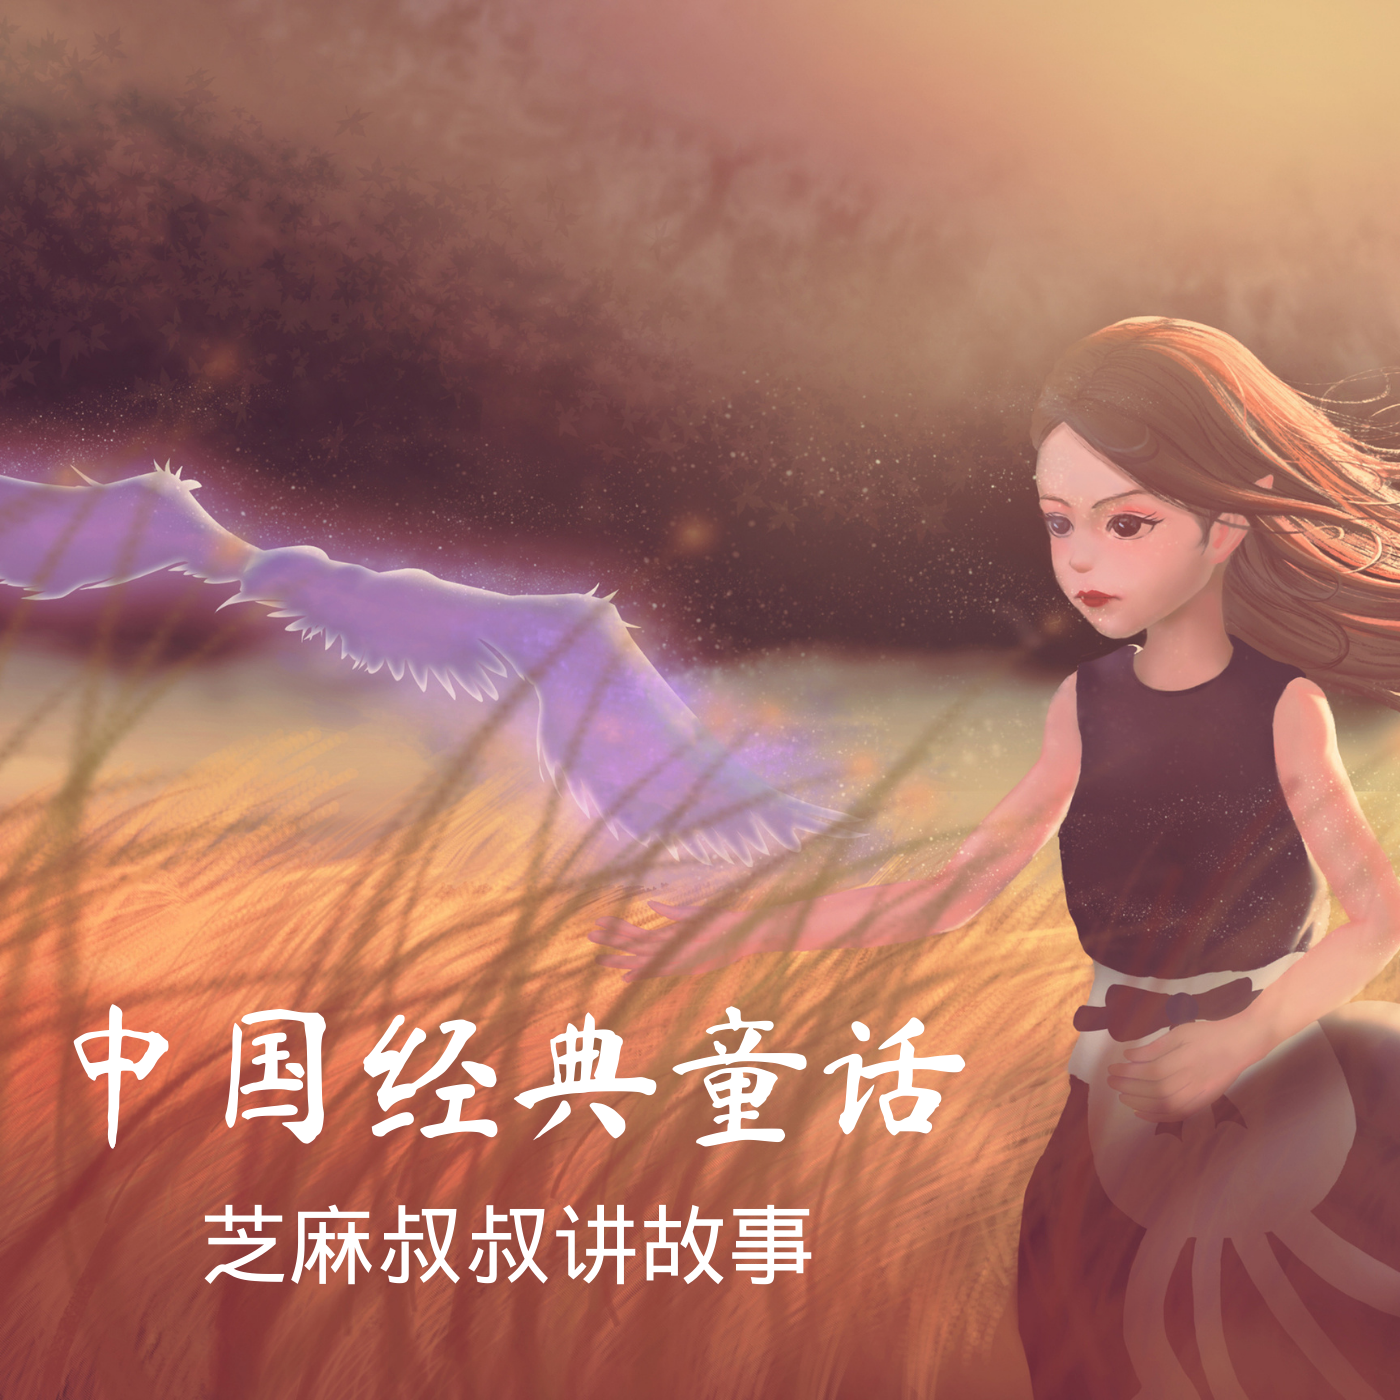 中国经典童话故事